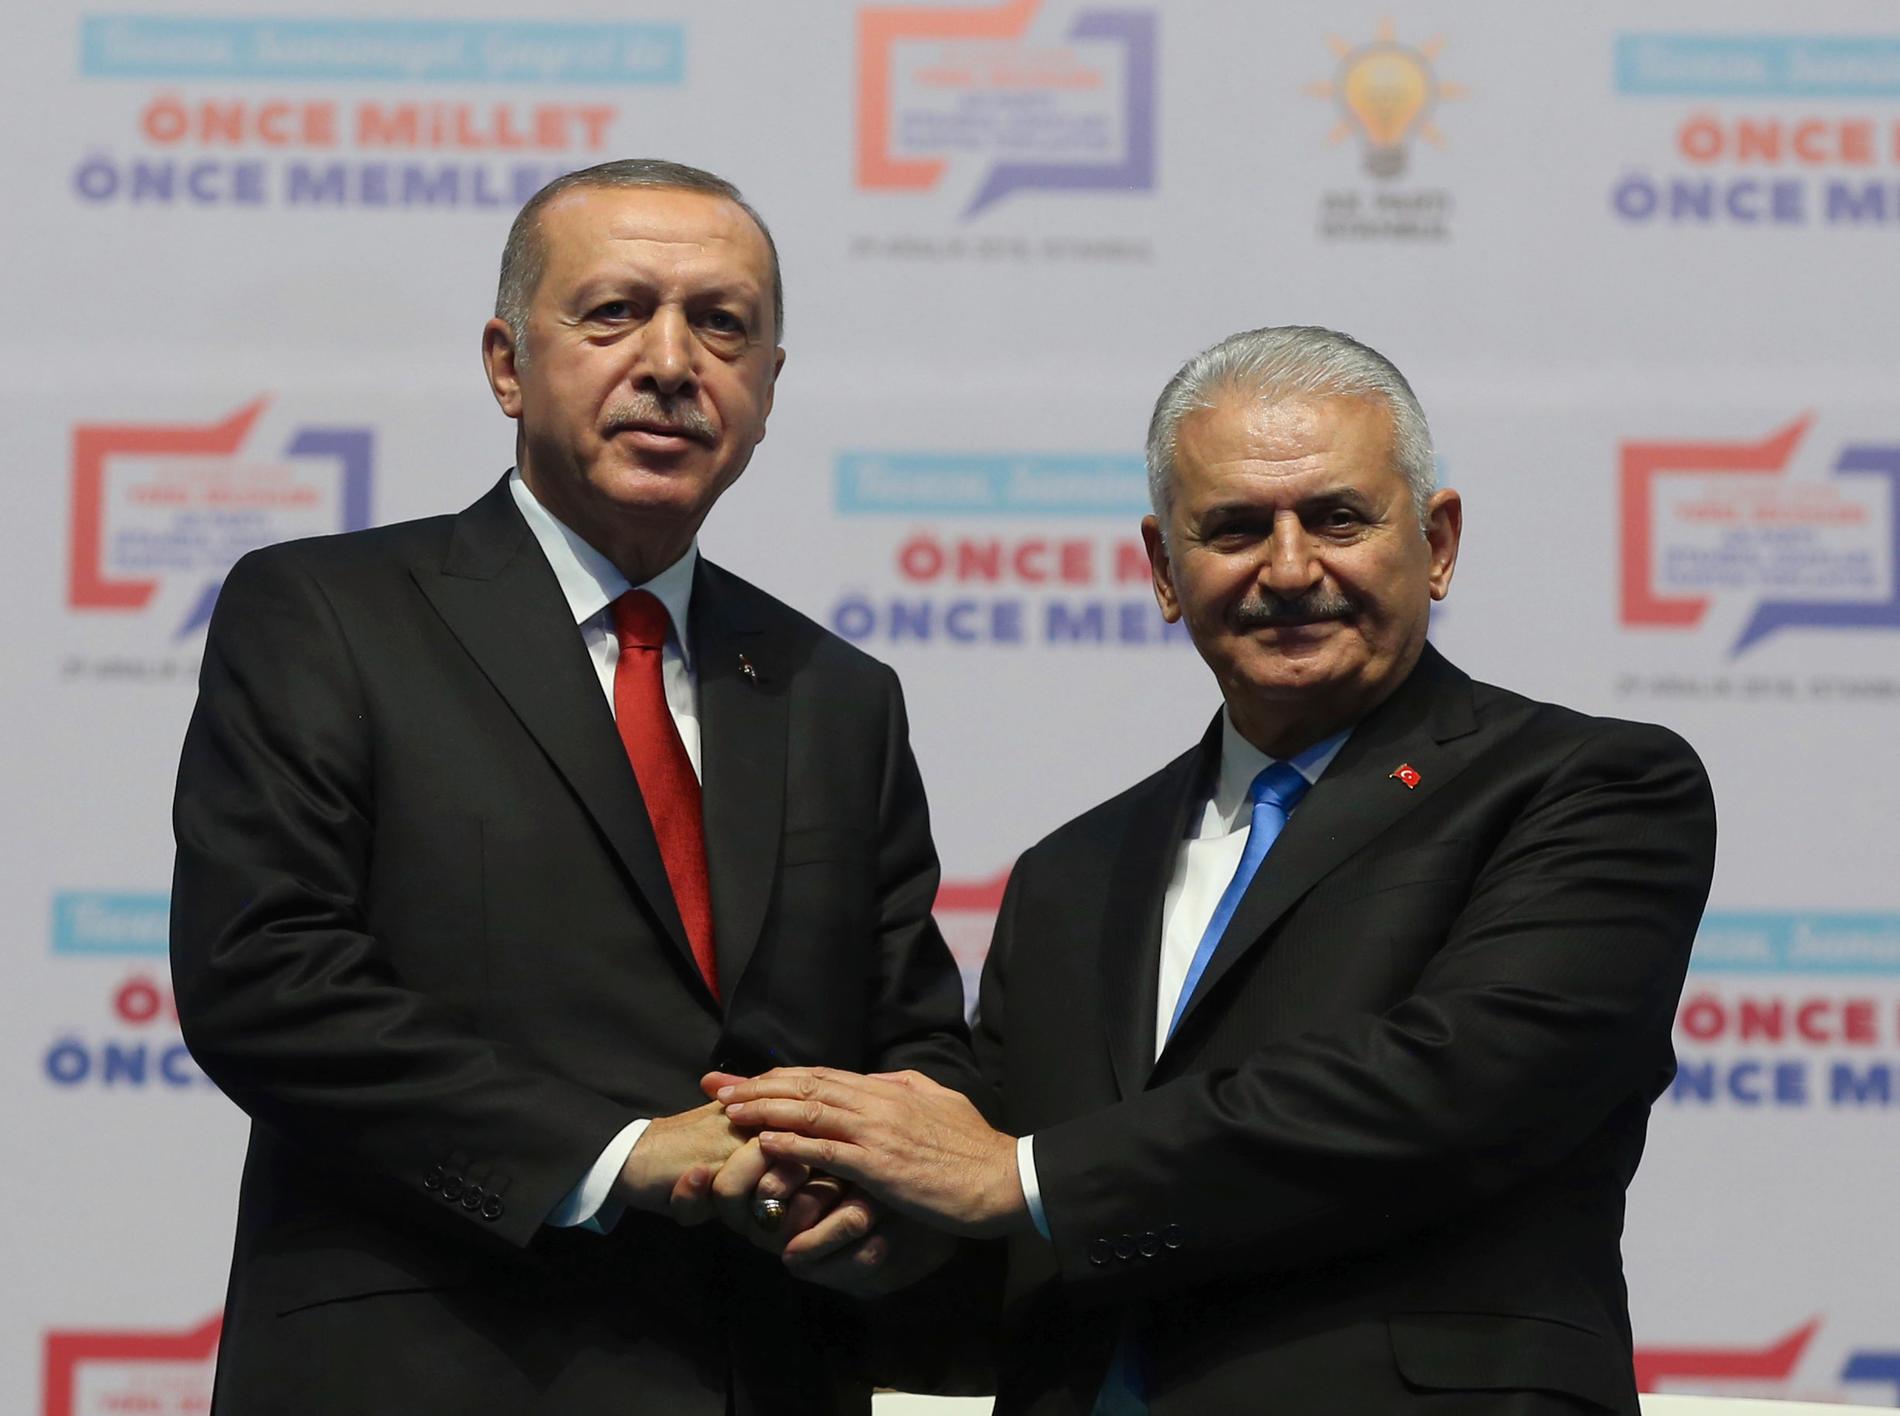 Turkiets president Recep Tayyip Erdogan, till vänster, skakar hand med Binali Yildirim, tidigare premiärminister och nu talman i det turkiska parlamentet.